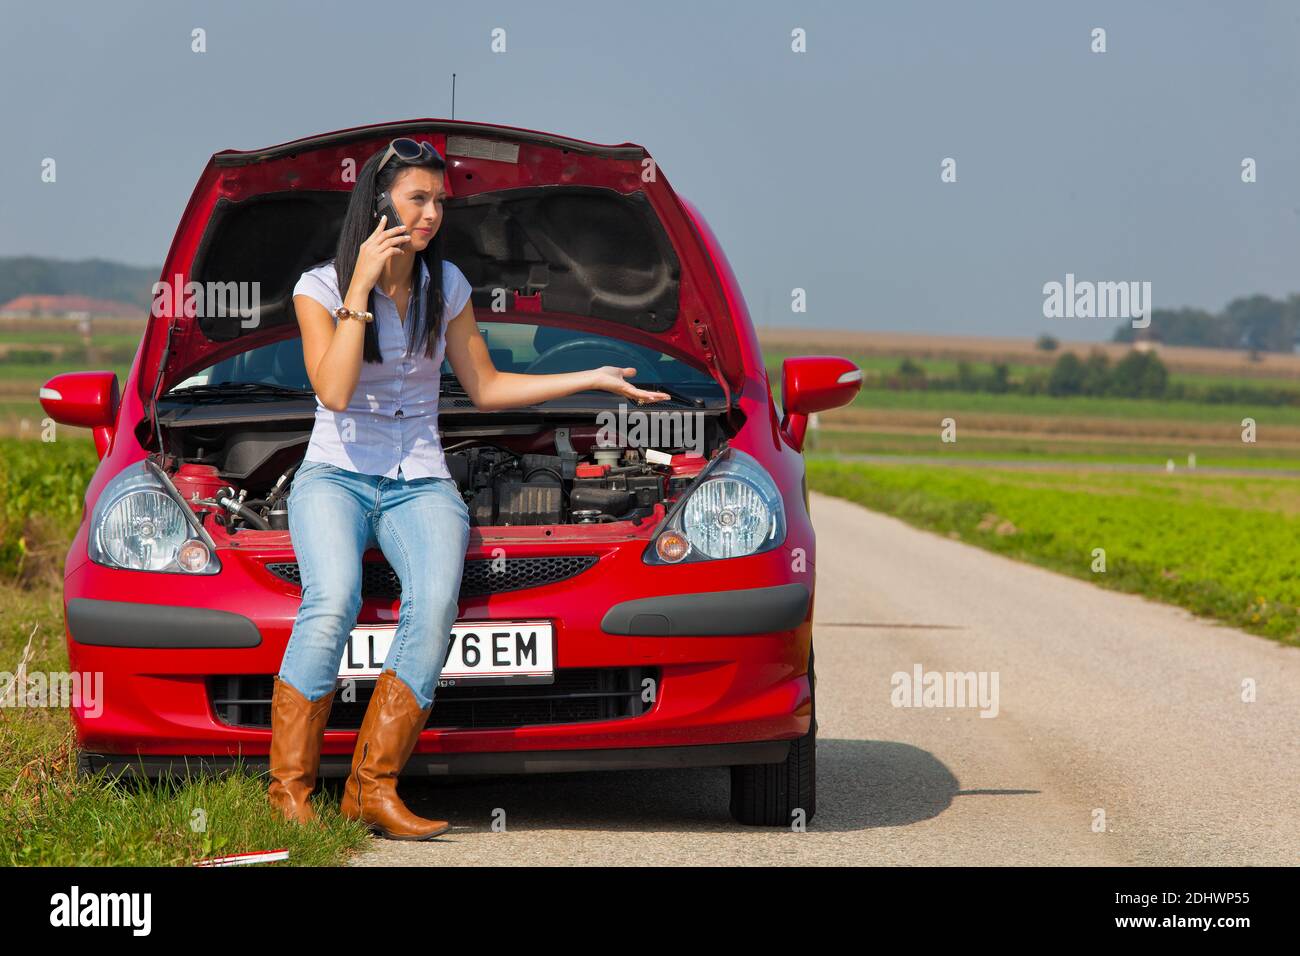 Junge Frau mit einer Motorpanne am Auto Banque D'Images